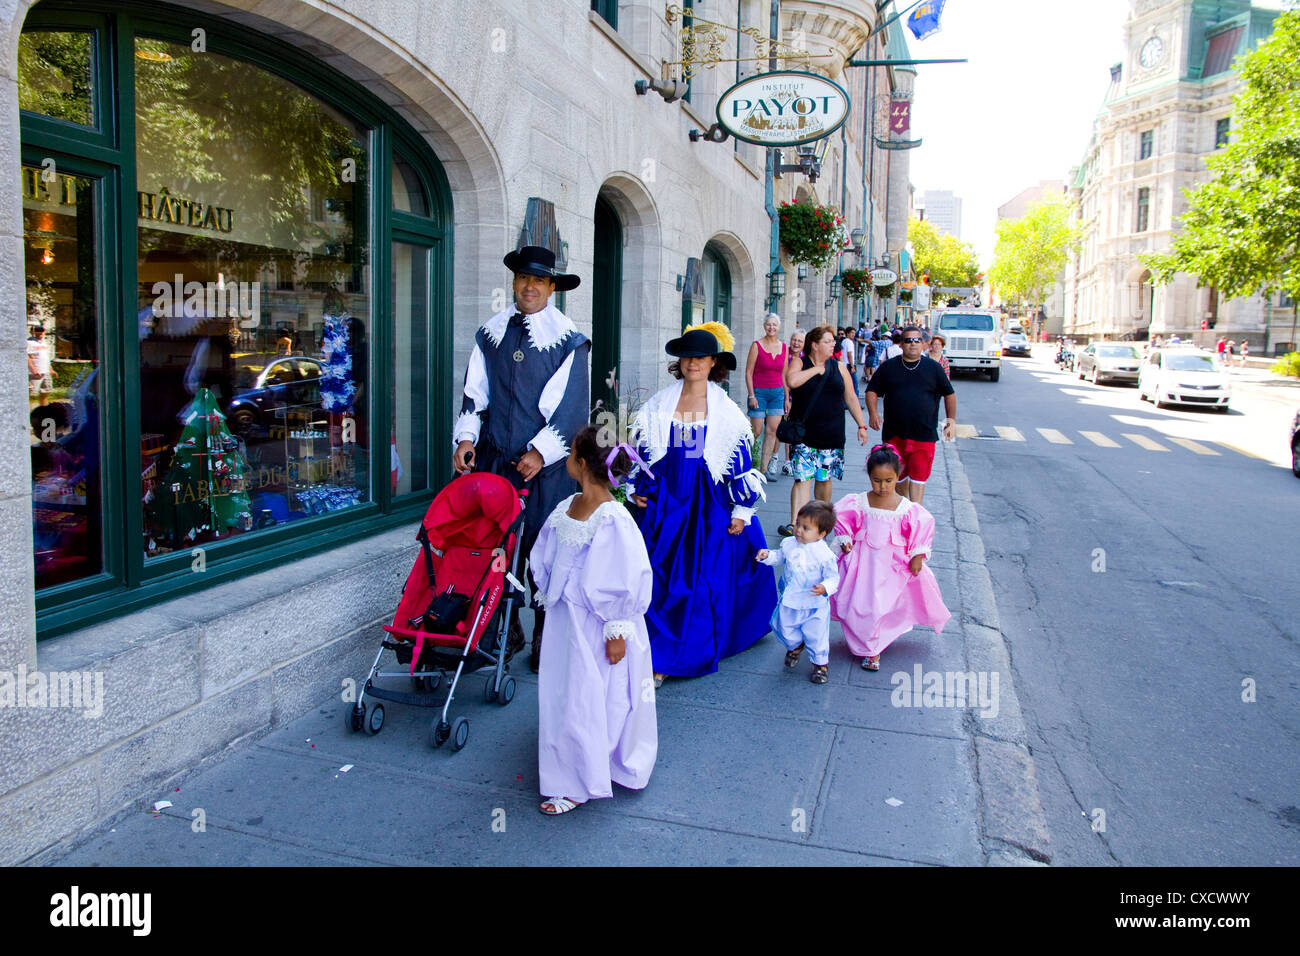 Familia en francés del siglo xvii traje canadiense, Festival de Nueva Francia, la ciudad de Quebec, Canadá Foto de stock